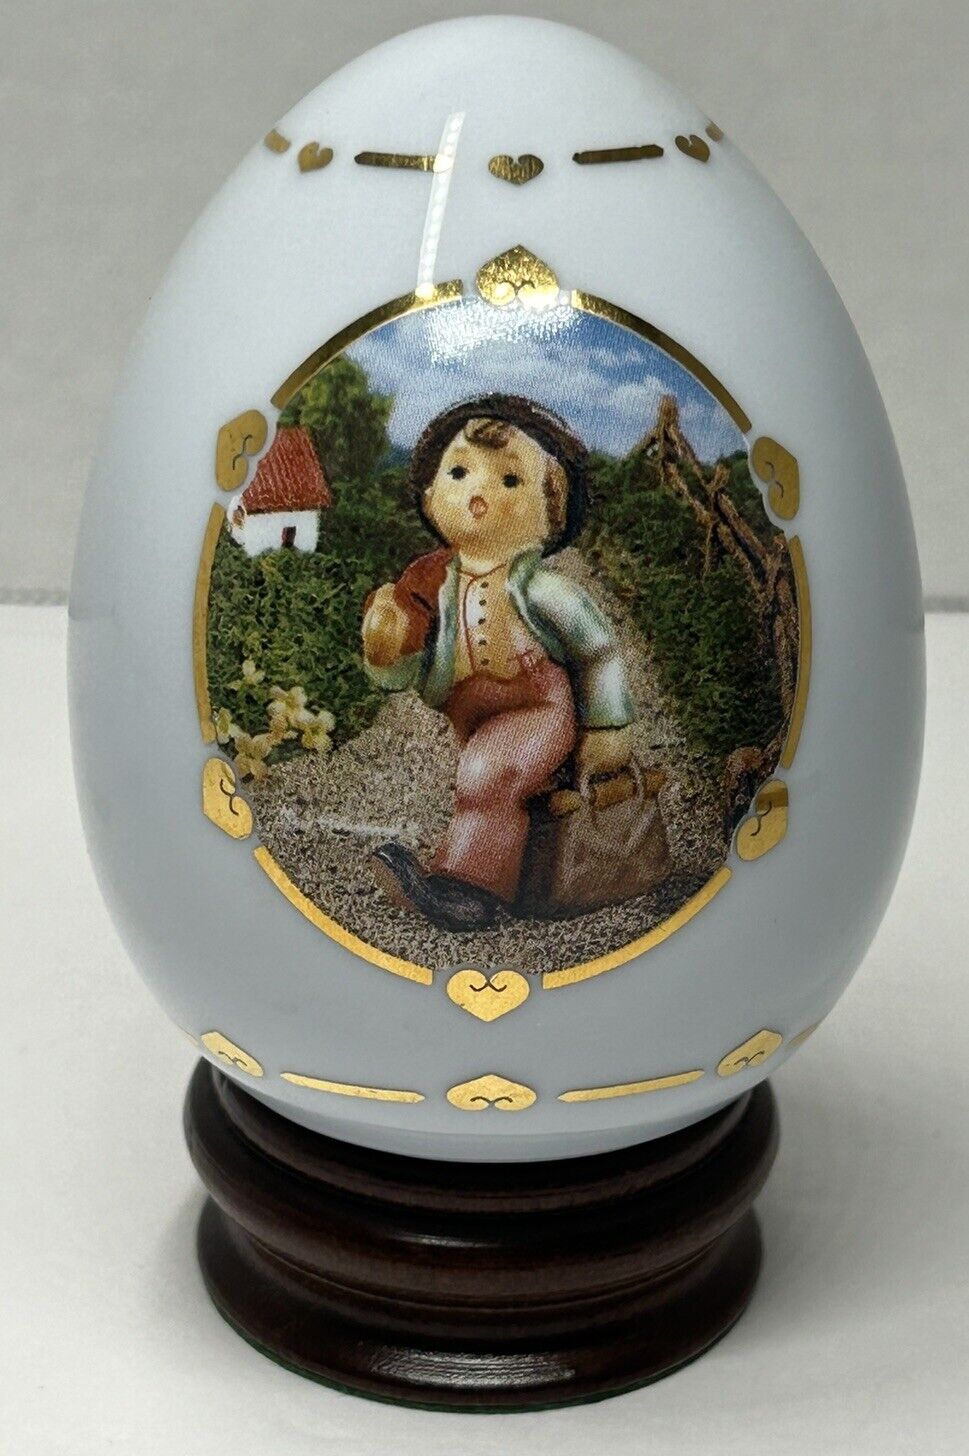 Vtg 1993 Danbury Mint MJ Hummels Porcelain Egg Collection Merry Wanderer Stand